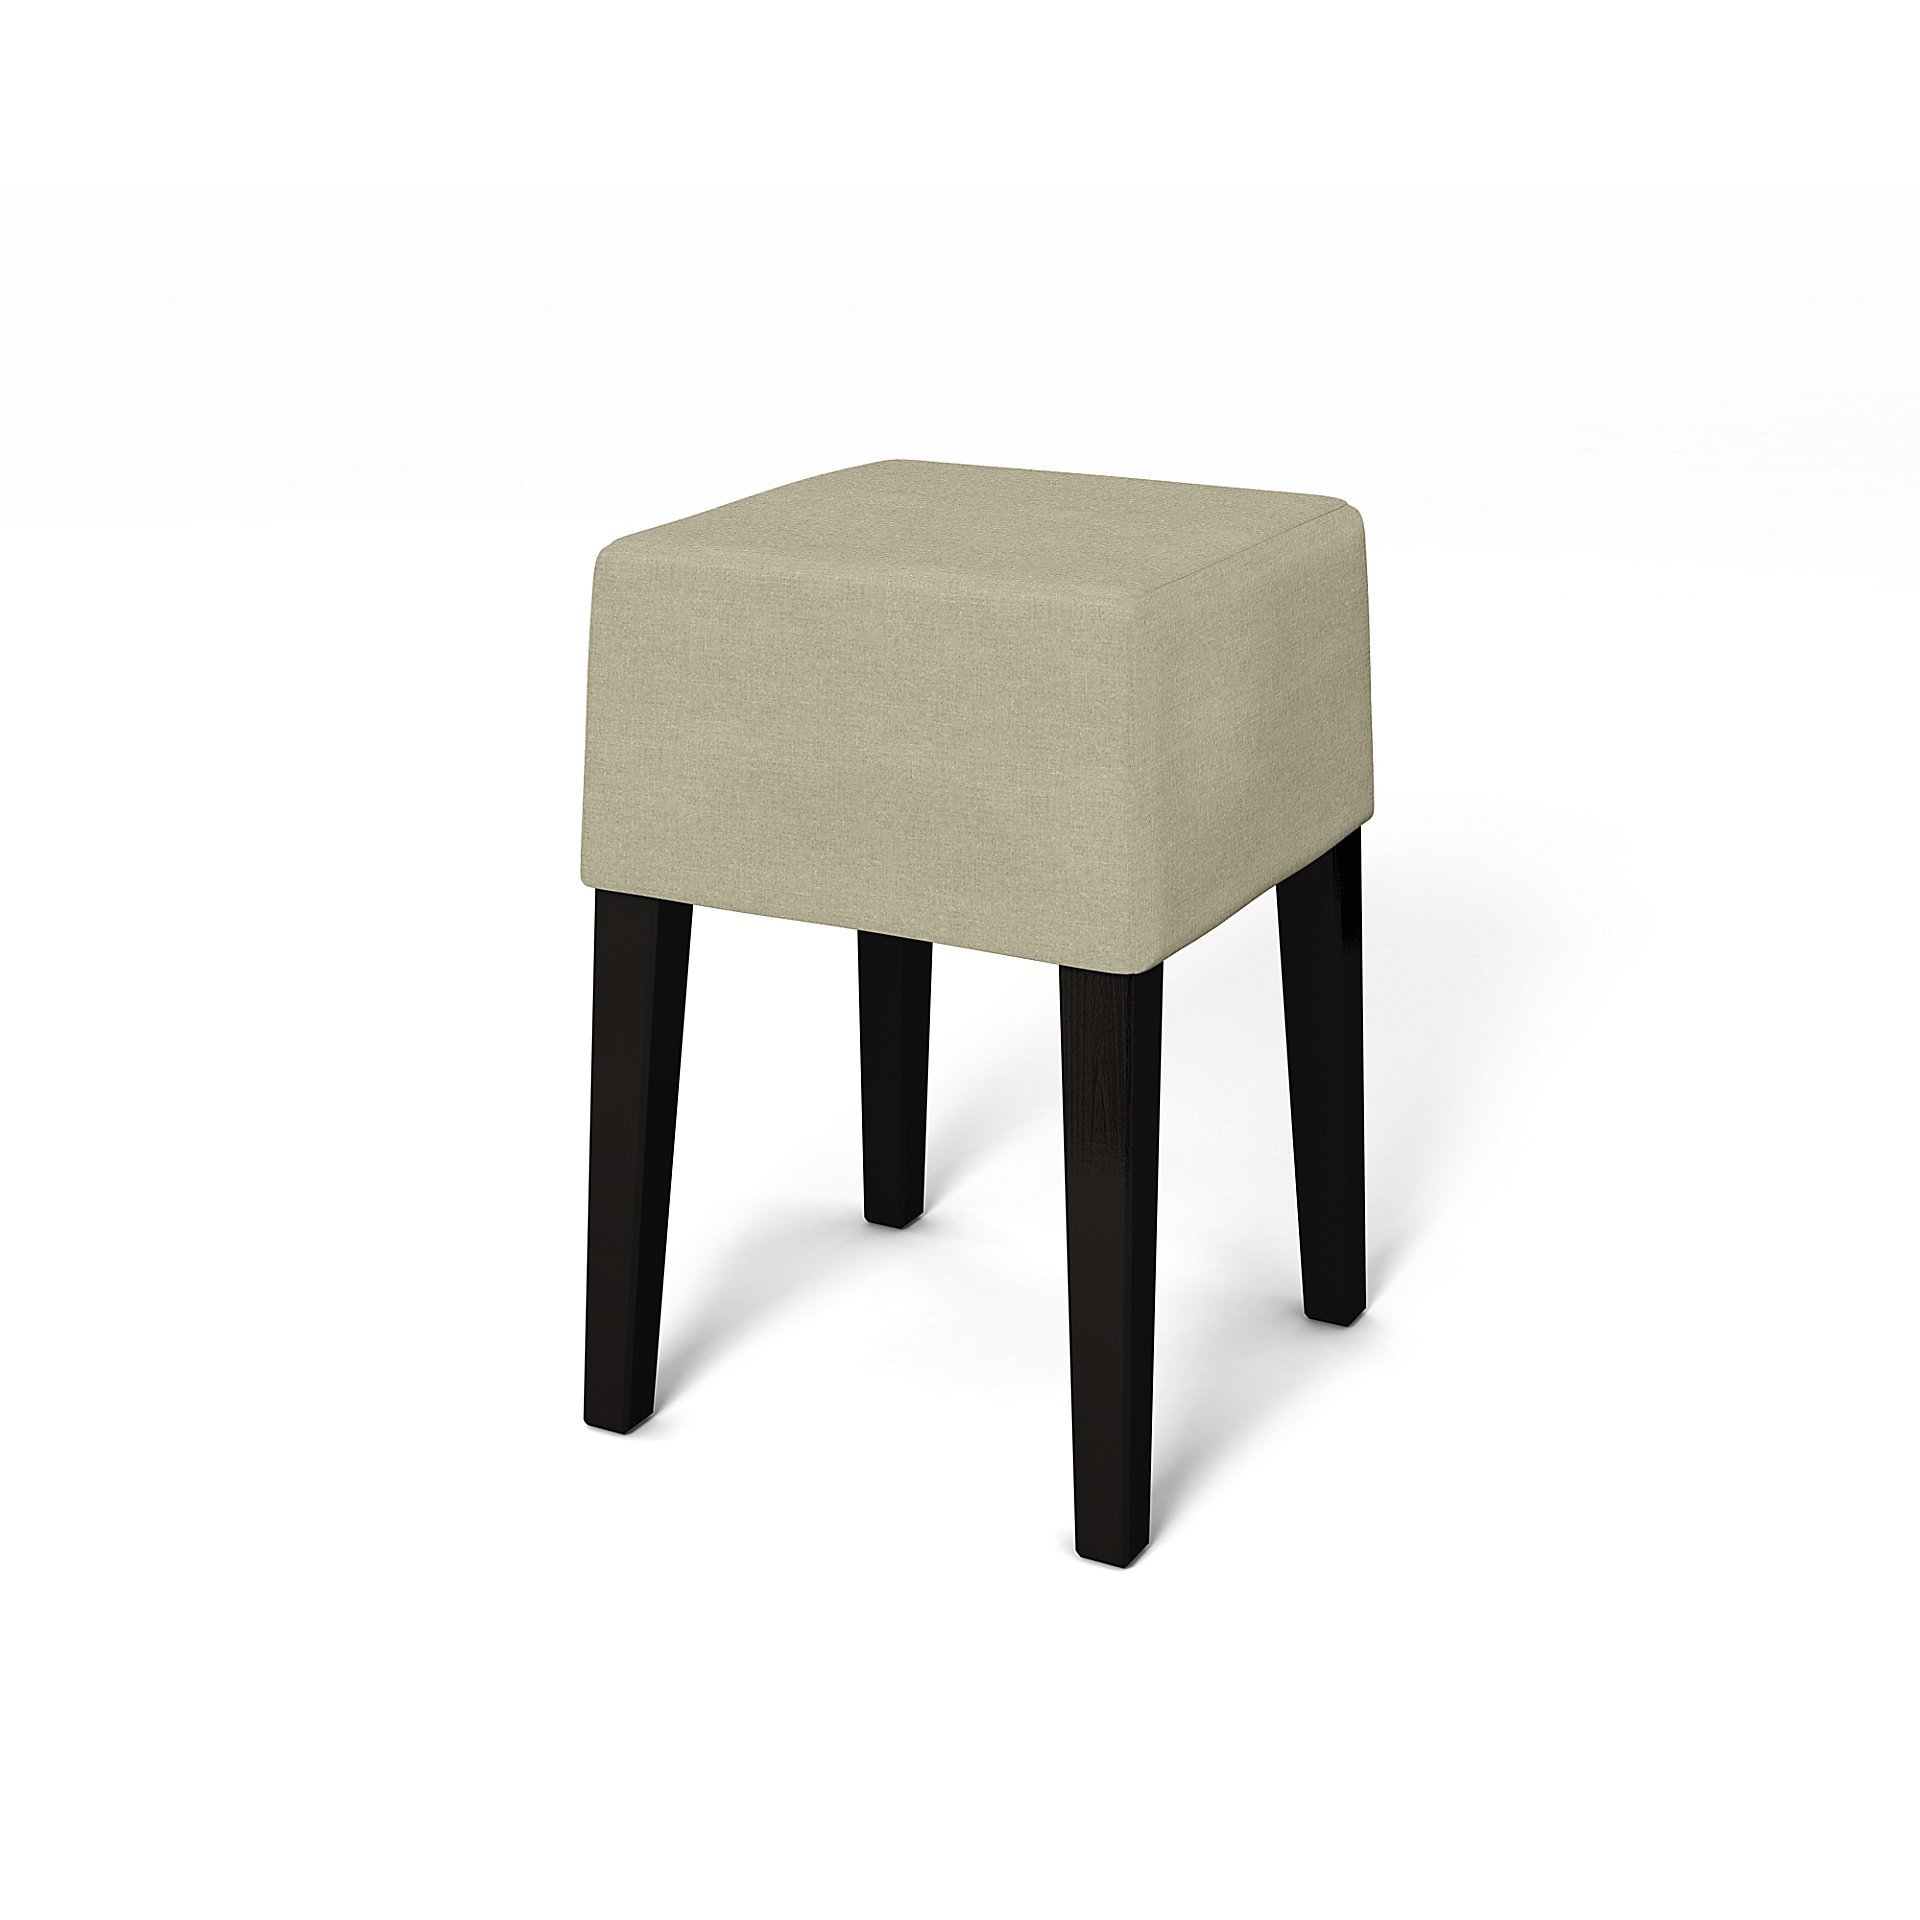 IKEA - Nils Stool Cover, Pebble, Linen - Bemz